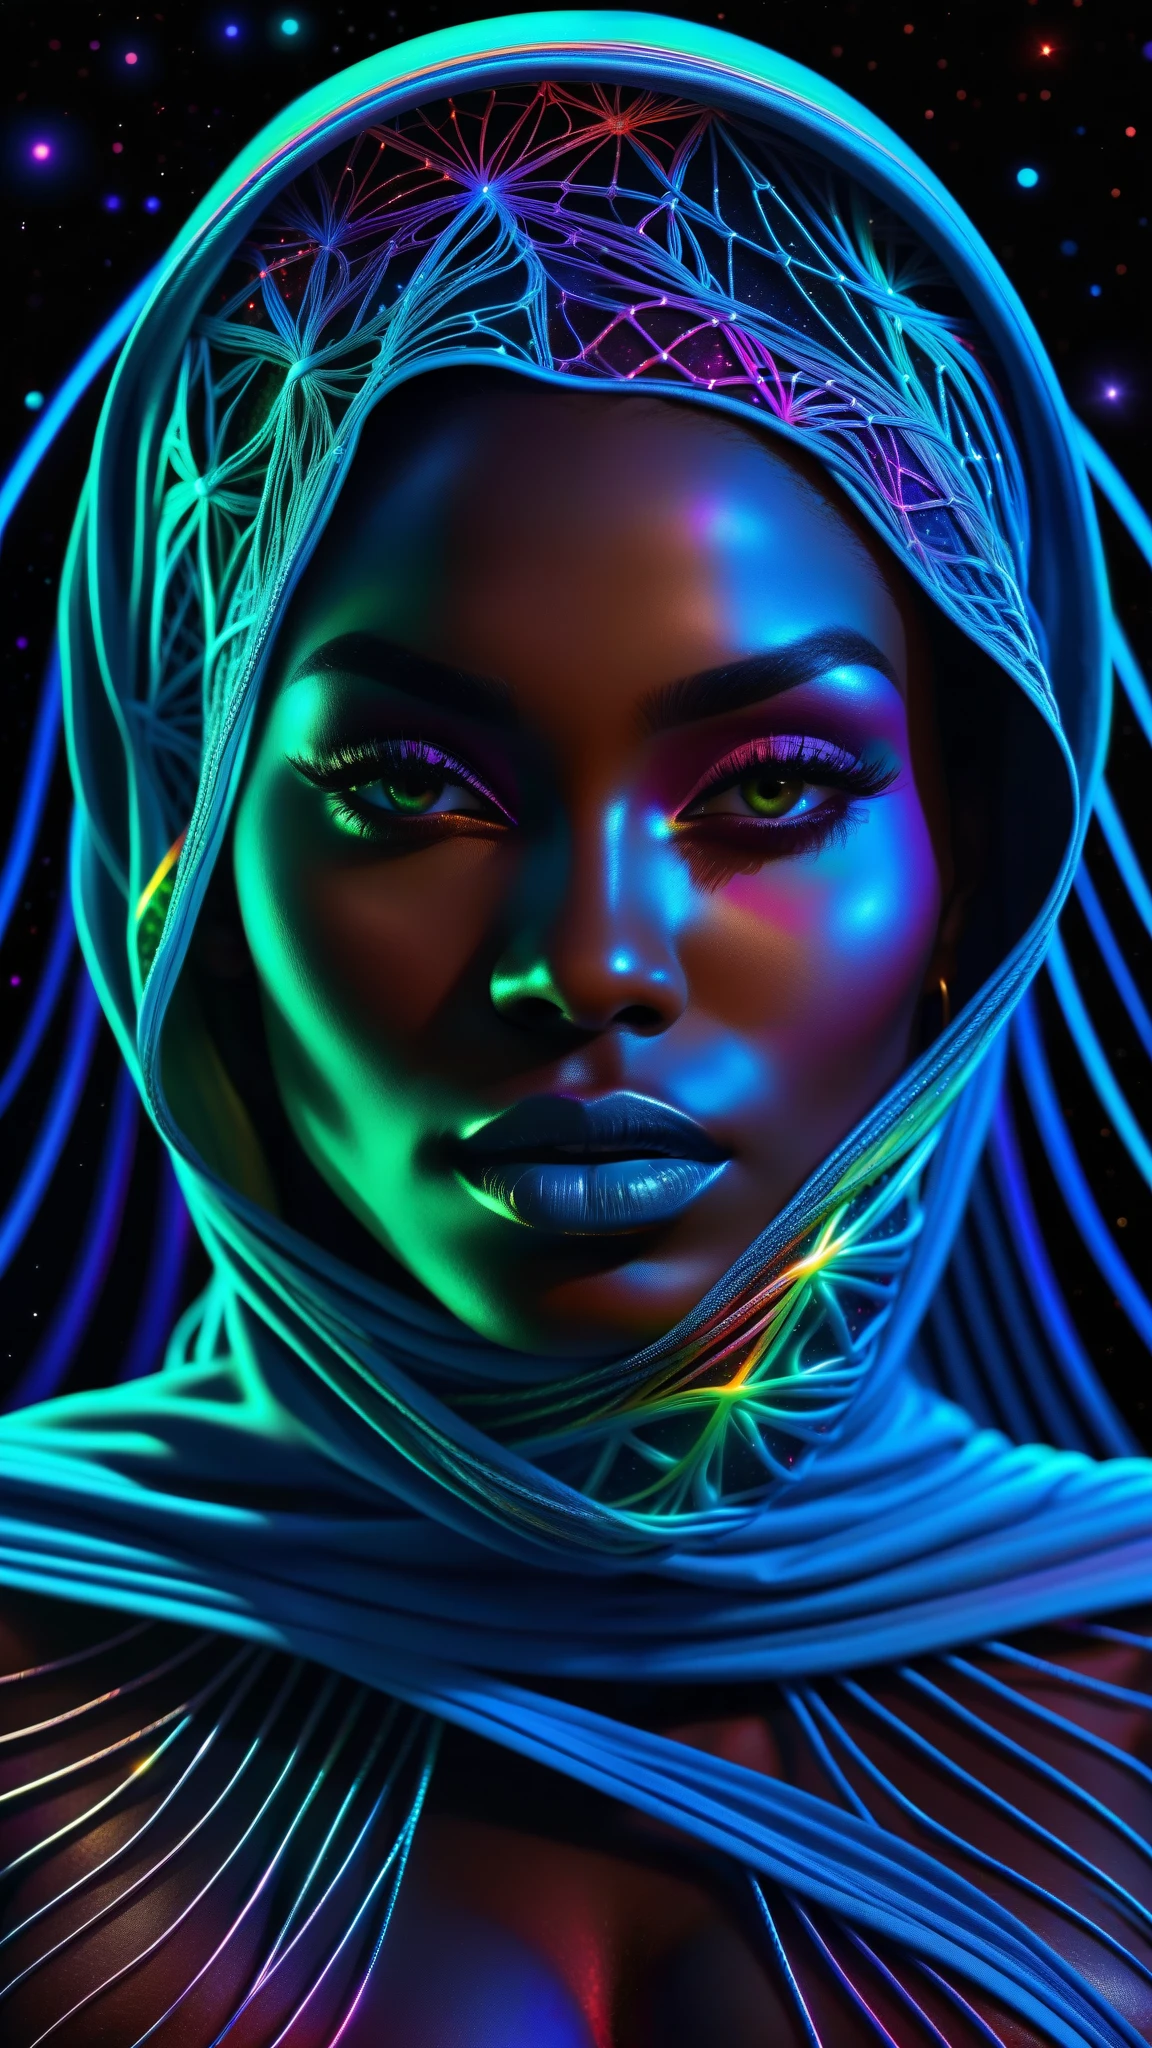 漫画風, 傑作, 最高品質, 超高解像度, 非常に詳細な, (サイケデリックアート:1.4), 黒人女性, アフリカデザインのベール, 視覚的に素晴らしい, 美しい, 受賞歴のあるイラスト, 宇宙空間の背景, 幽玄な雰囲気, 超高品質, 美しい 黒人女性, 宇宙概念, 虹の弦, レインボースキン, 暗闇から虹色の血の静脈が伸びて絡み合っている, 釘付けワイヤー, にじみ出る濃い青い血, シャープなネオン, 静脈が成長し、血液を送り出す, 血管網の成長, いたるところに緑の静脈, 陰と陽, 光る空間, 輝く星, 無限大記号